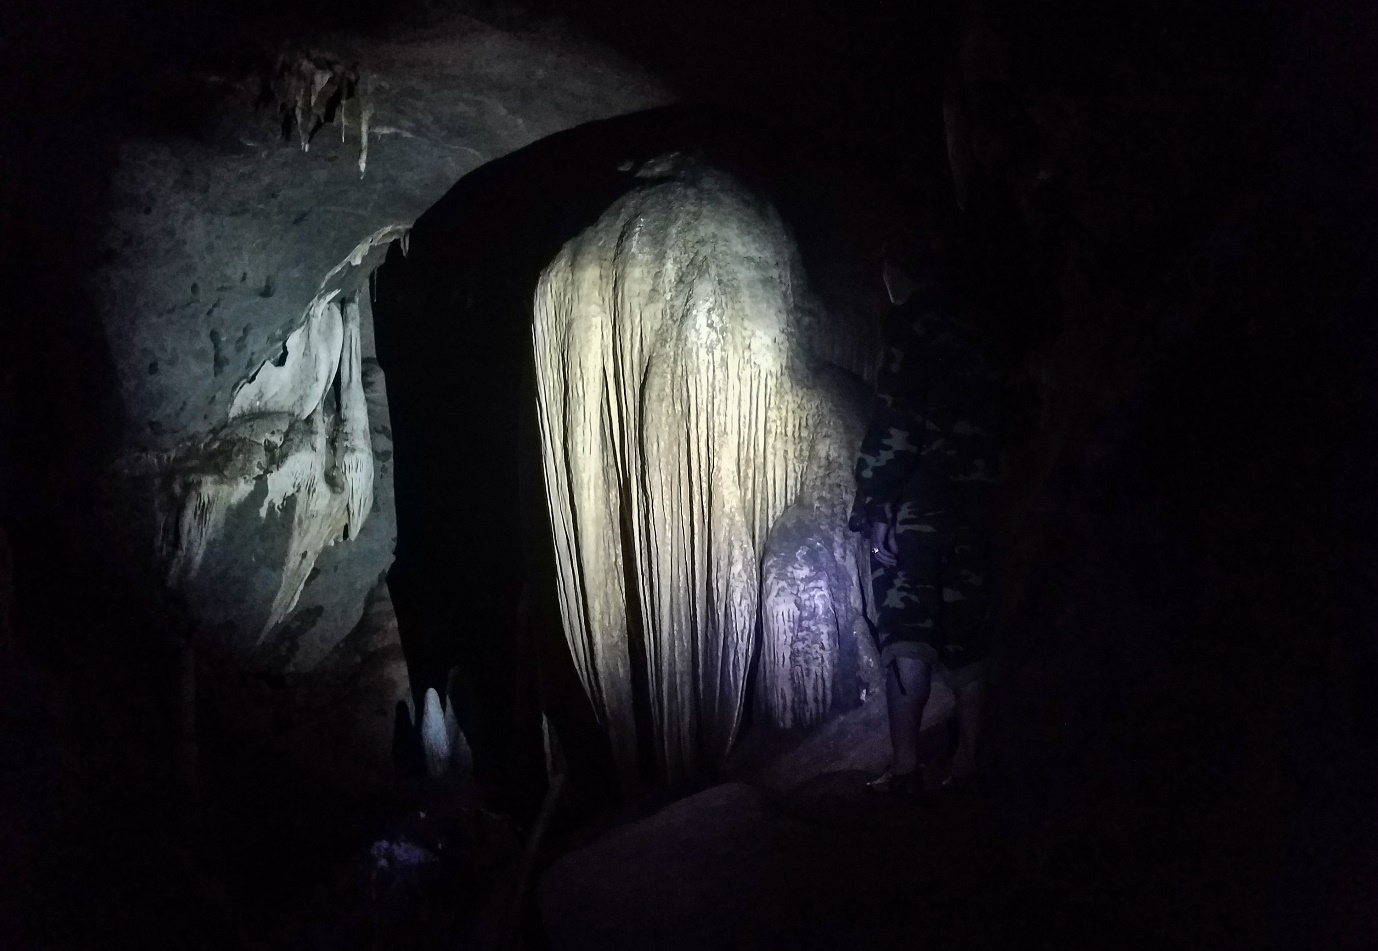 Khám phá hang động hoang sơ đầy mê mẩn giữ núi rừng Quảng Trị - 17